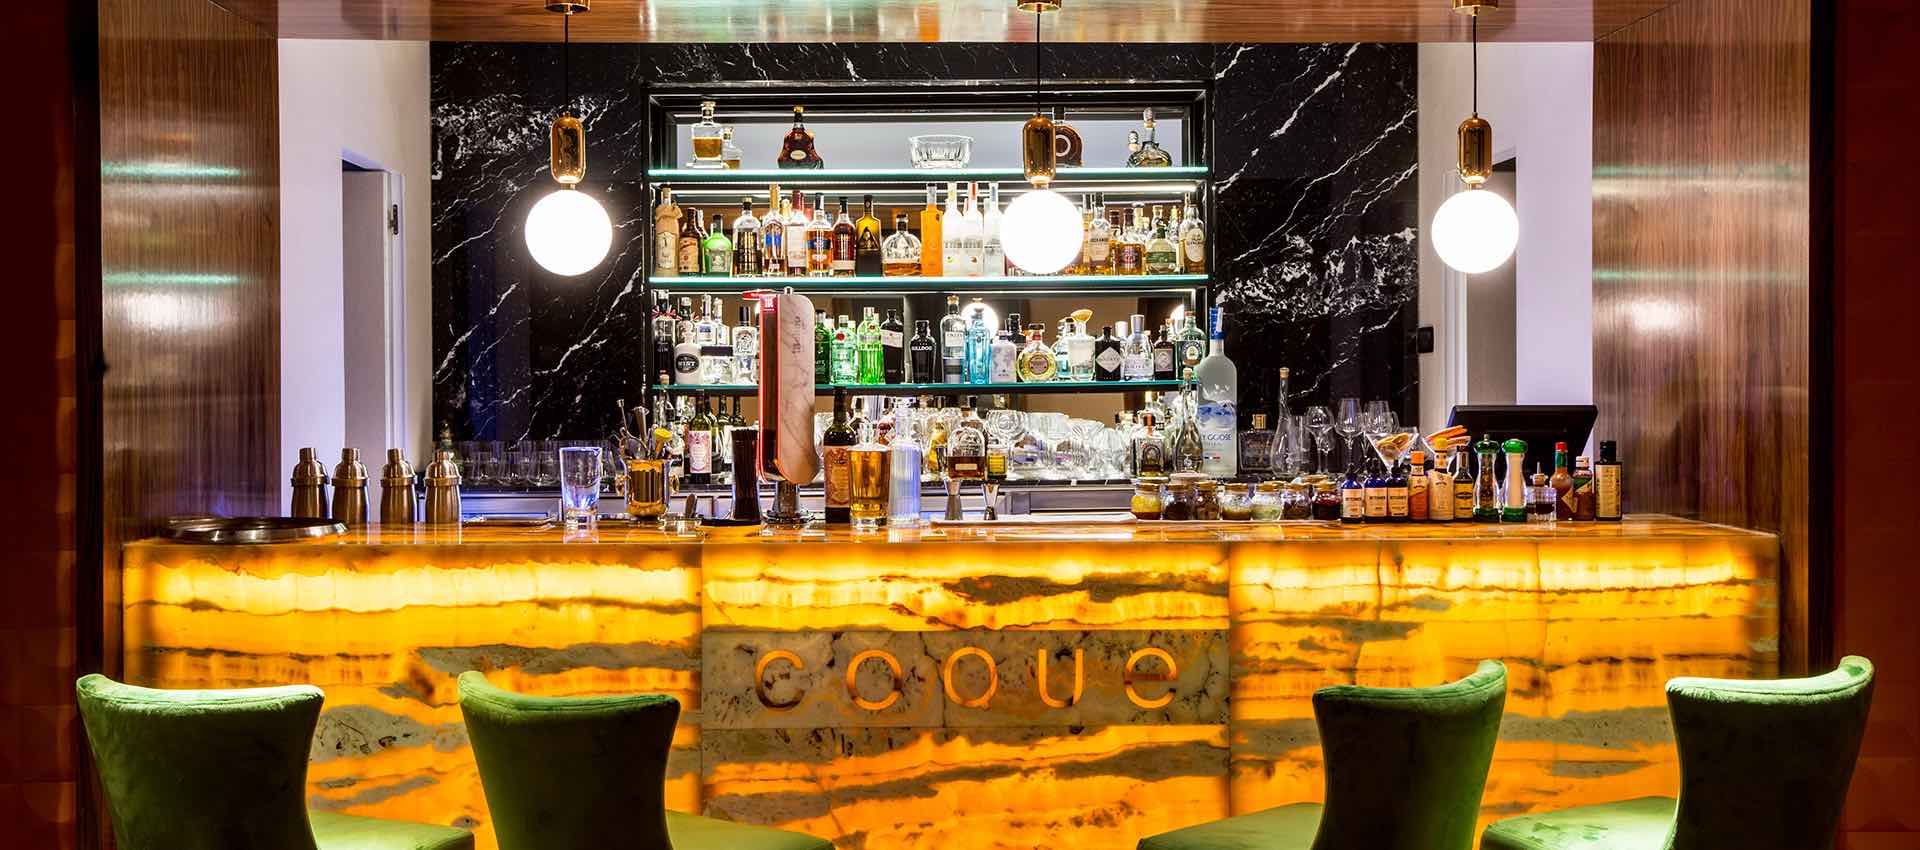 Restaurante Coque inaugura una experiencia original de alta cocina en el corazón de Madrid